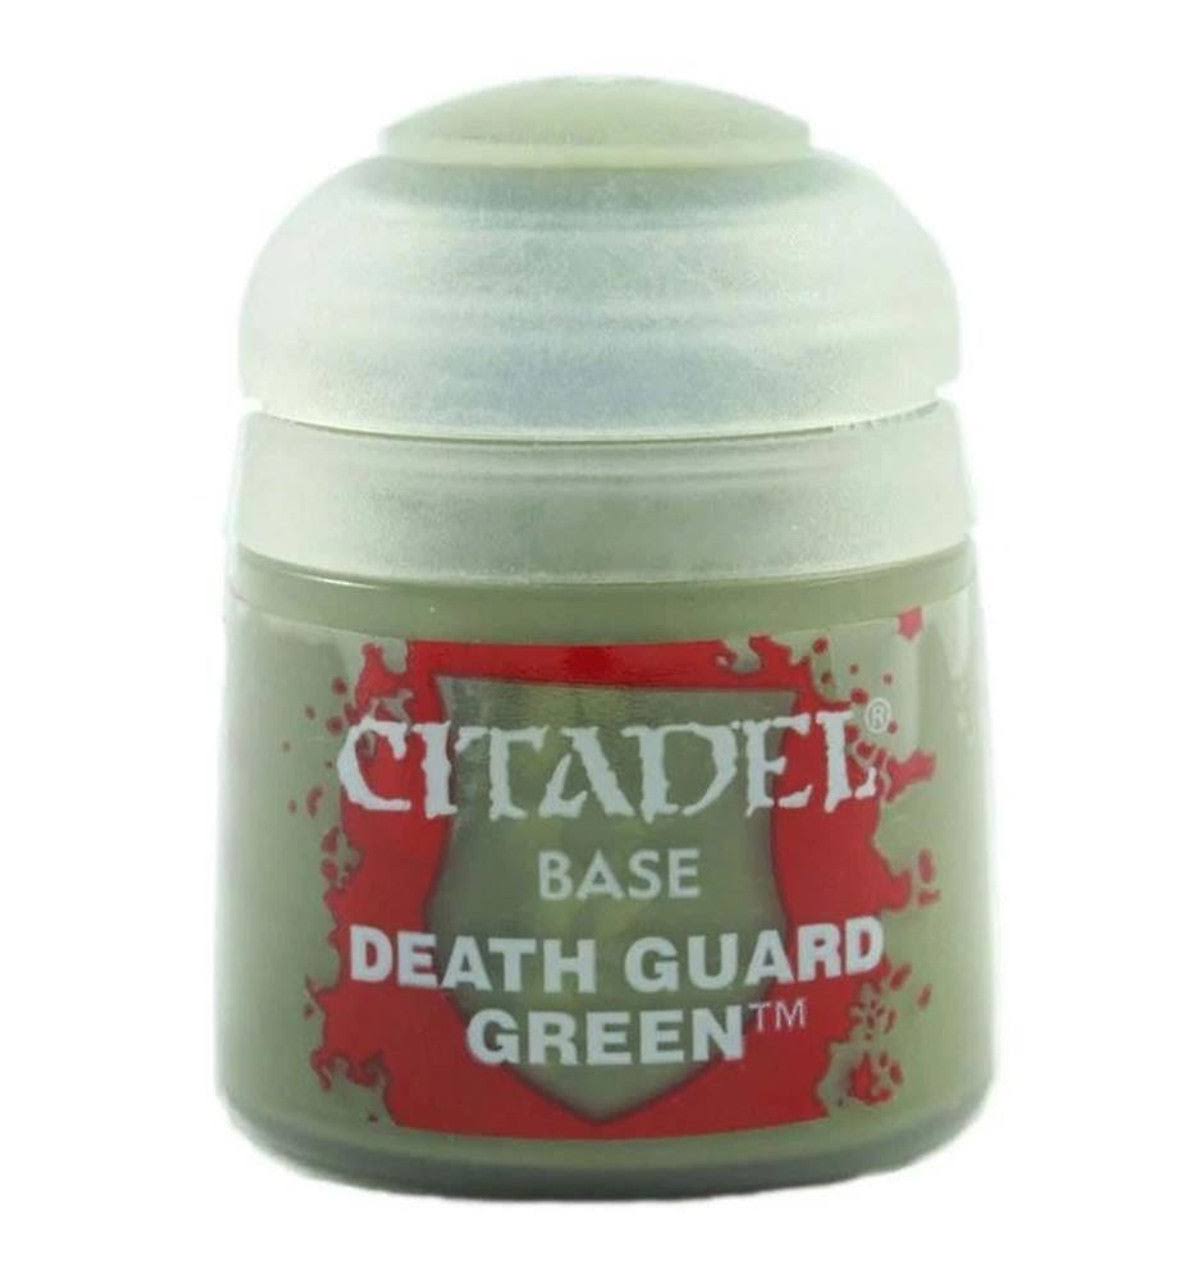 Citadel Base - Death Guard Green